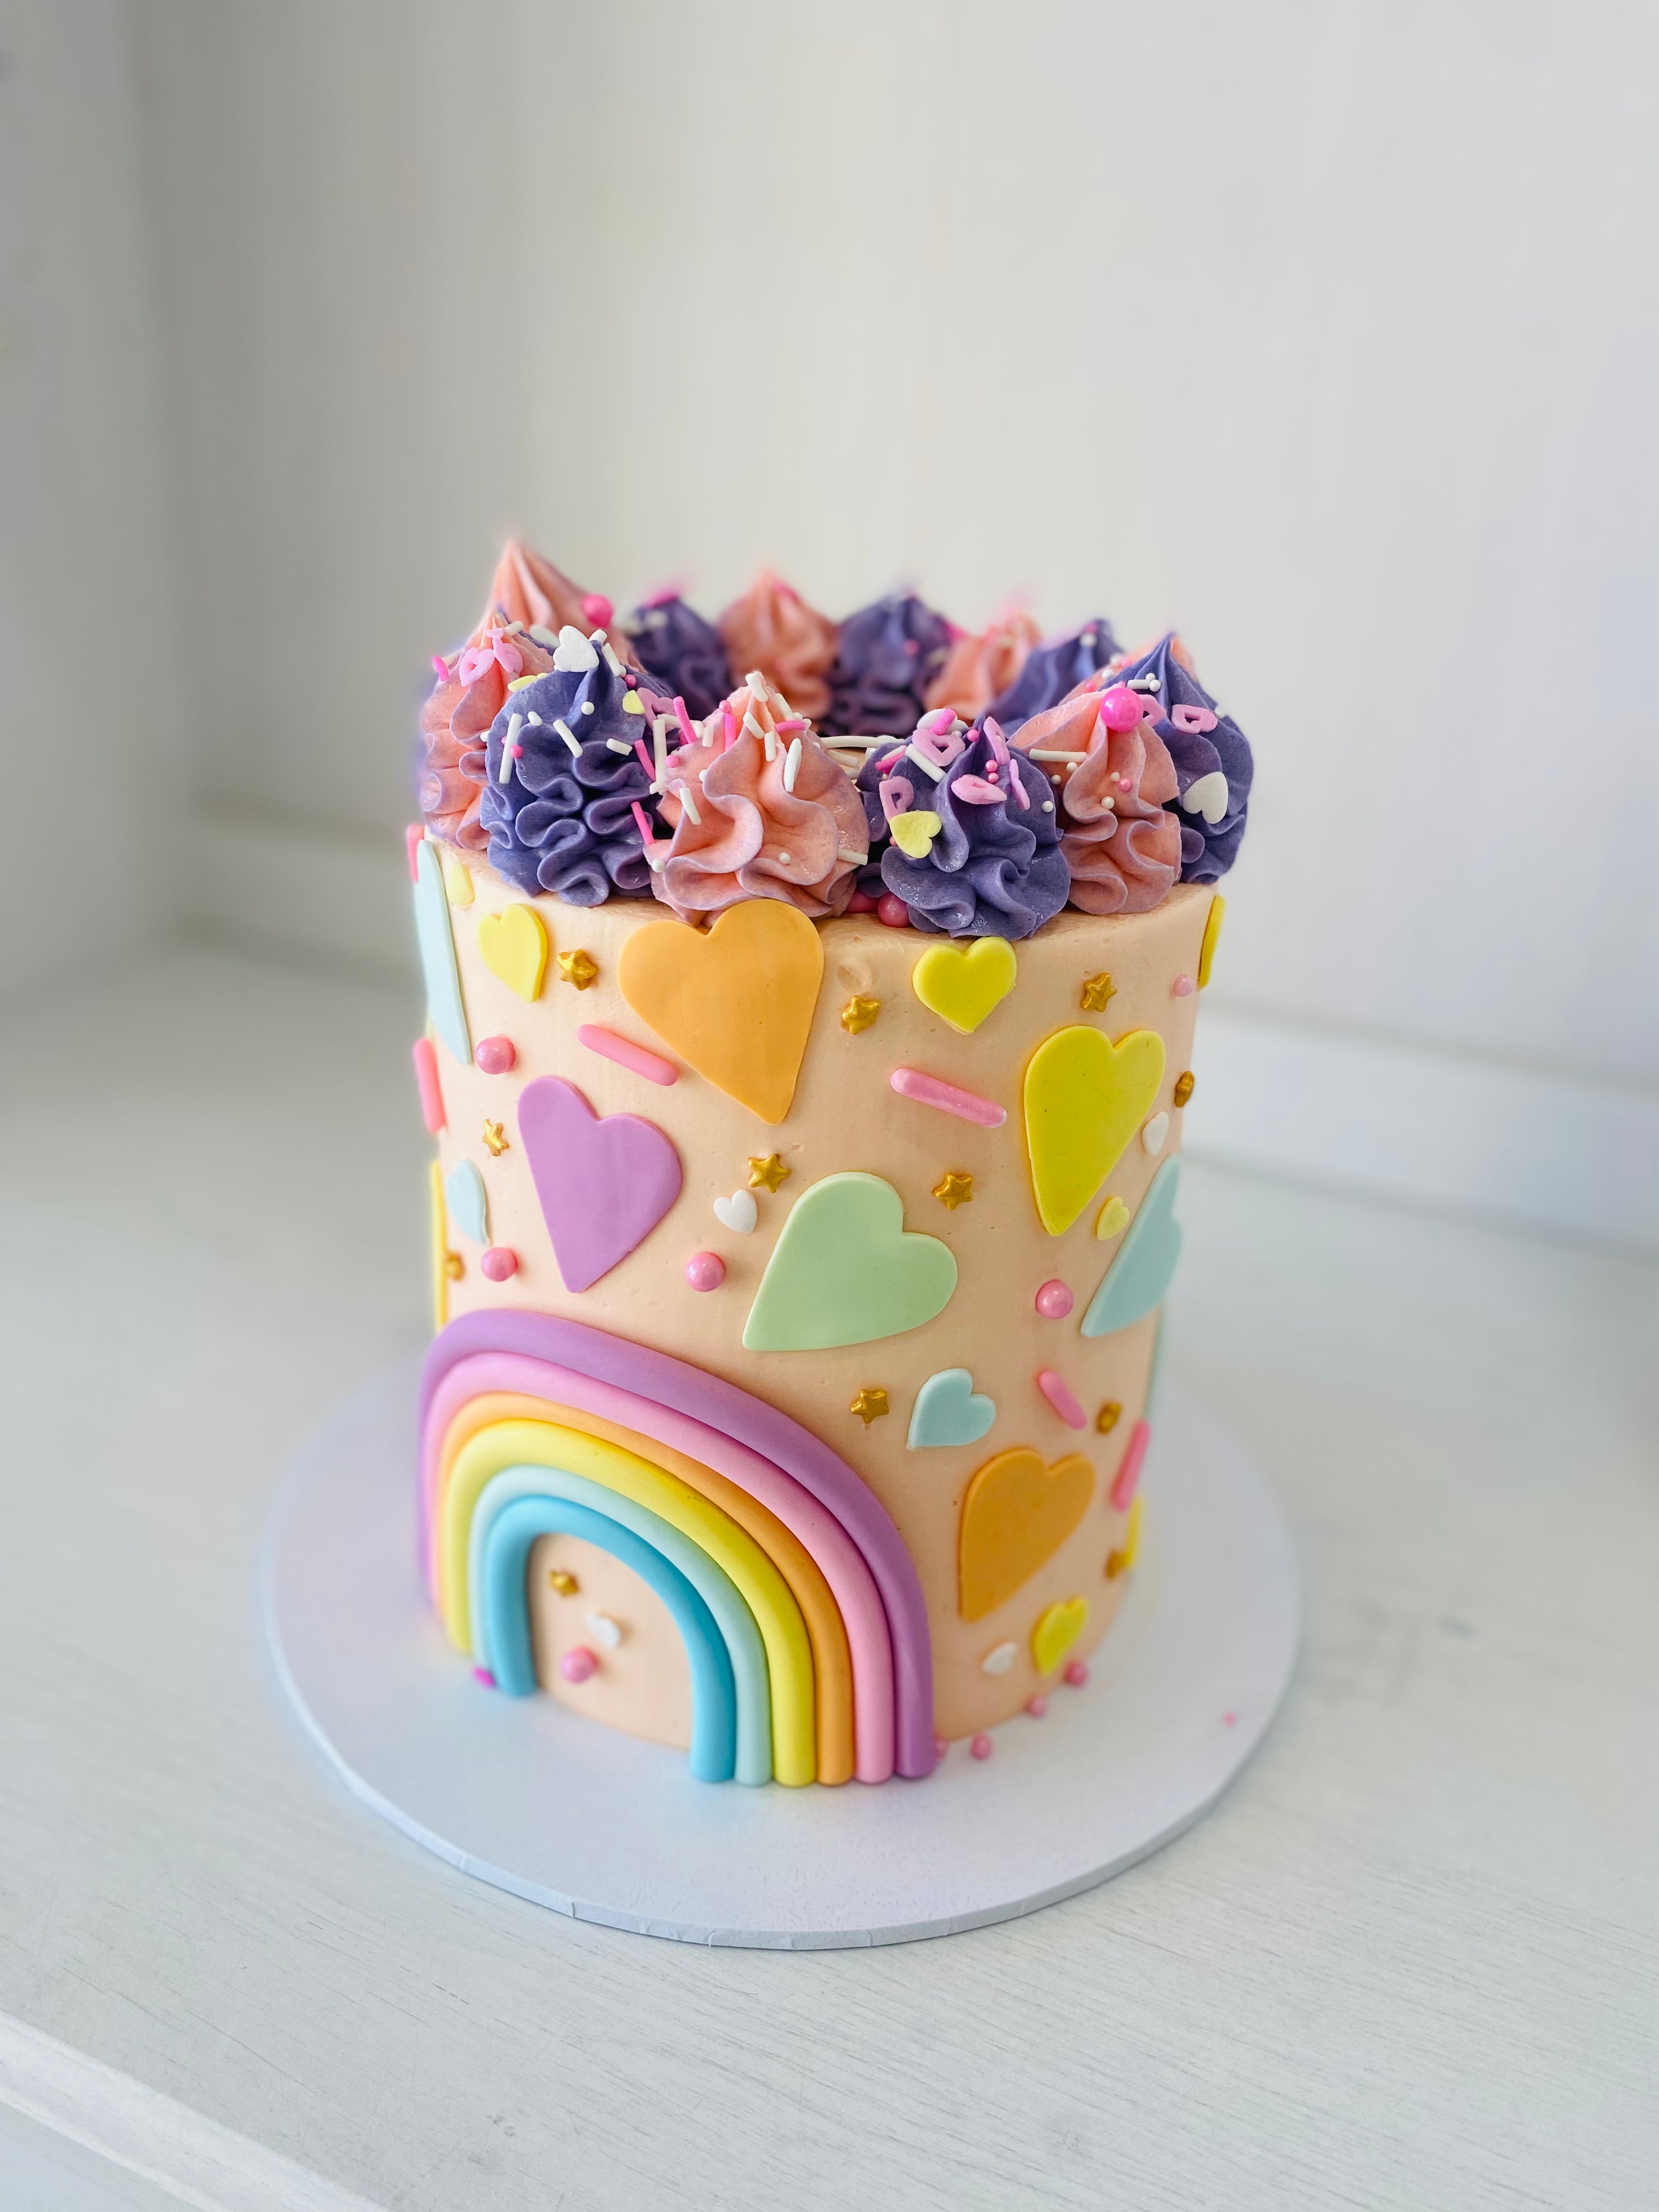 Magical rainbow Cake